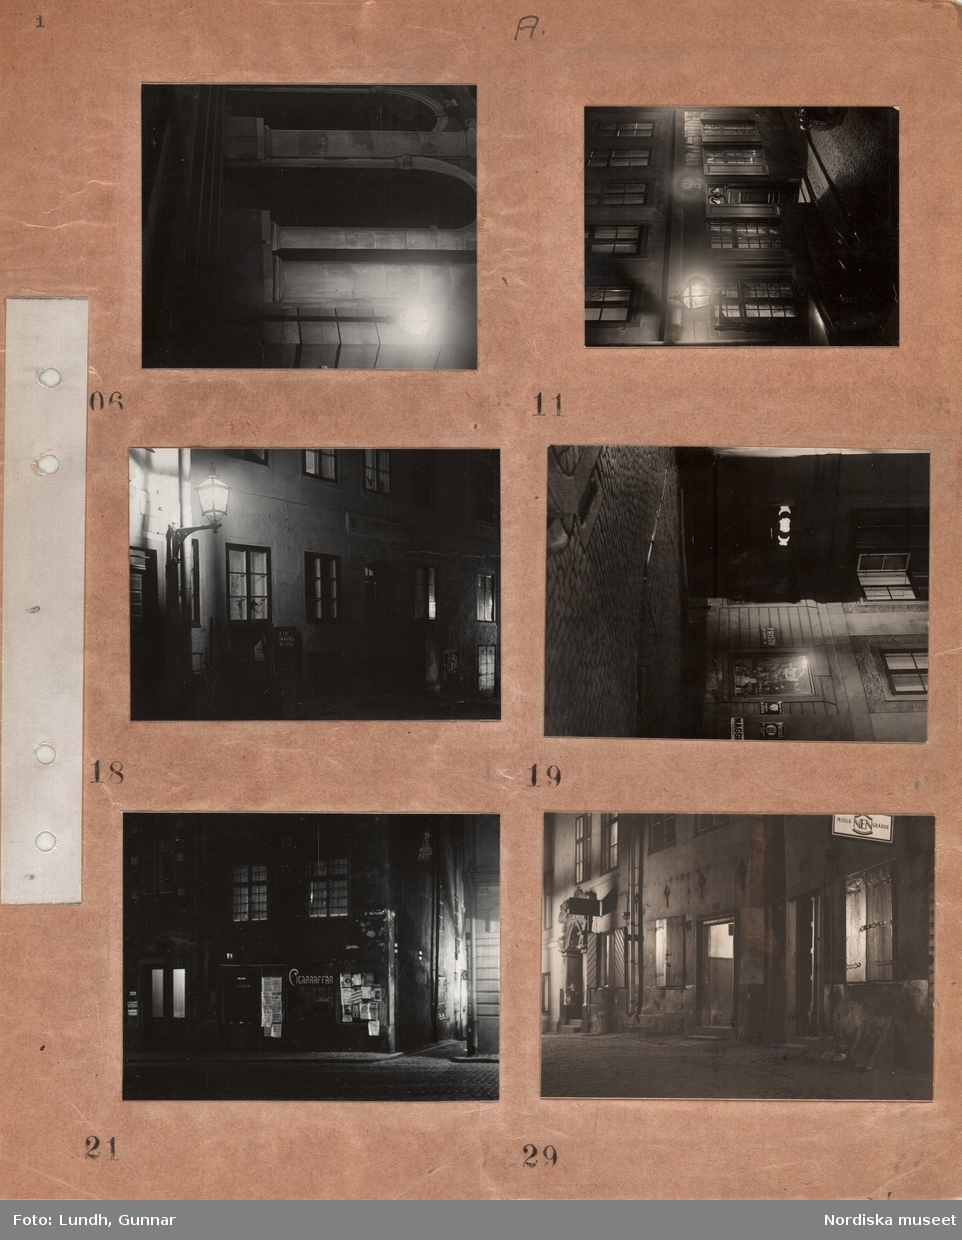 Motiv: (ingen anteckning) ;
Nattbild av stad med gator och byggnader möjligen Gamla Stan, husfasader med upplysta fönster, skyltfönster med skylt "Frisör" "Tvättbjörn", hus med skylt "Cigaraffär" och löpsedlar och affischer.